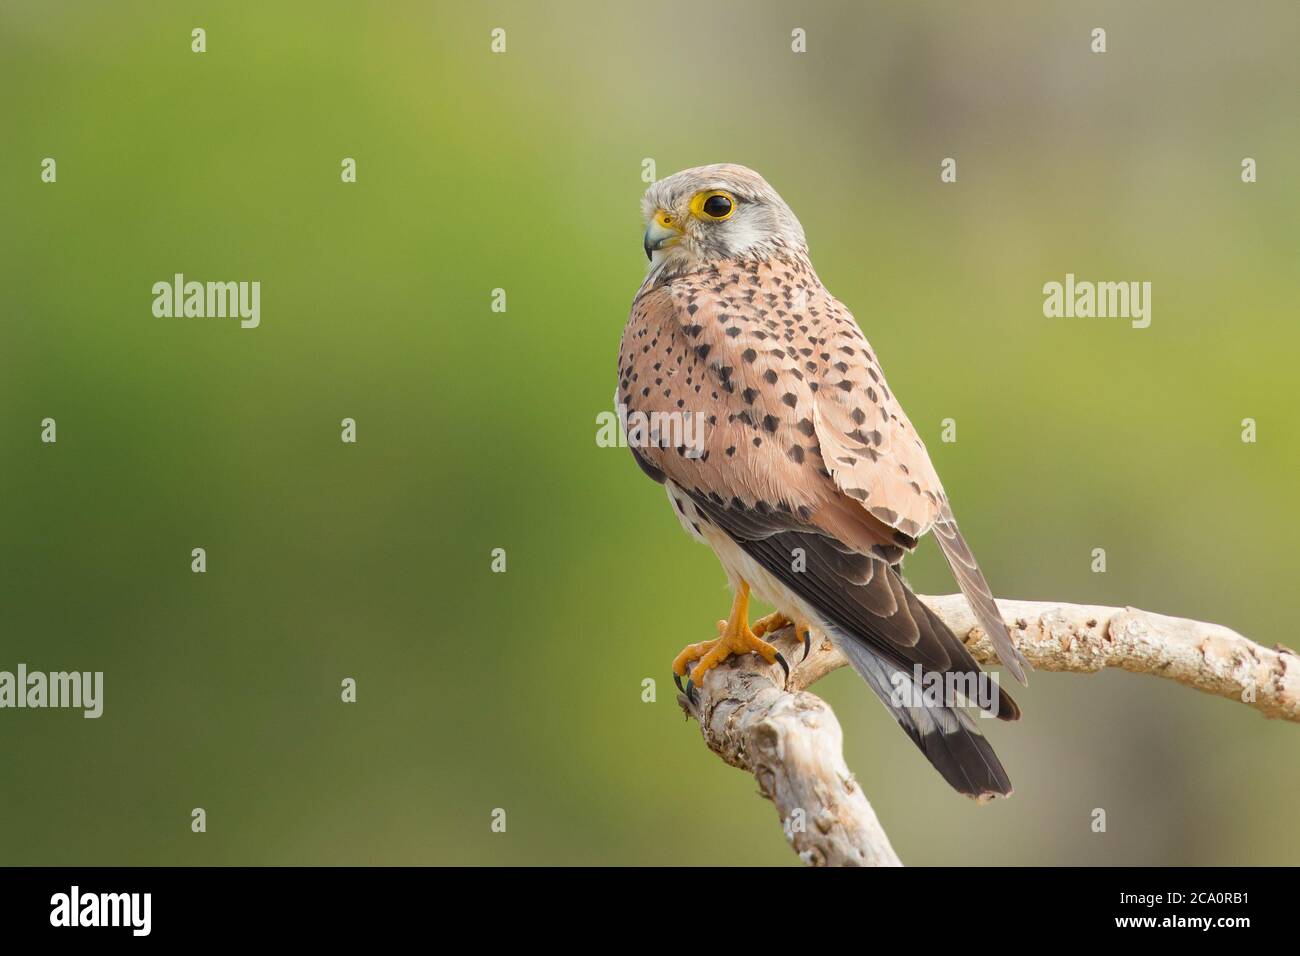 Le kestrel commun (Falco tinnunculus) est un oiseau de proie appartenant au groupe kestrel de la famille des falconidae. Banque D'Images